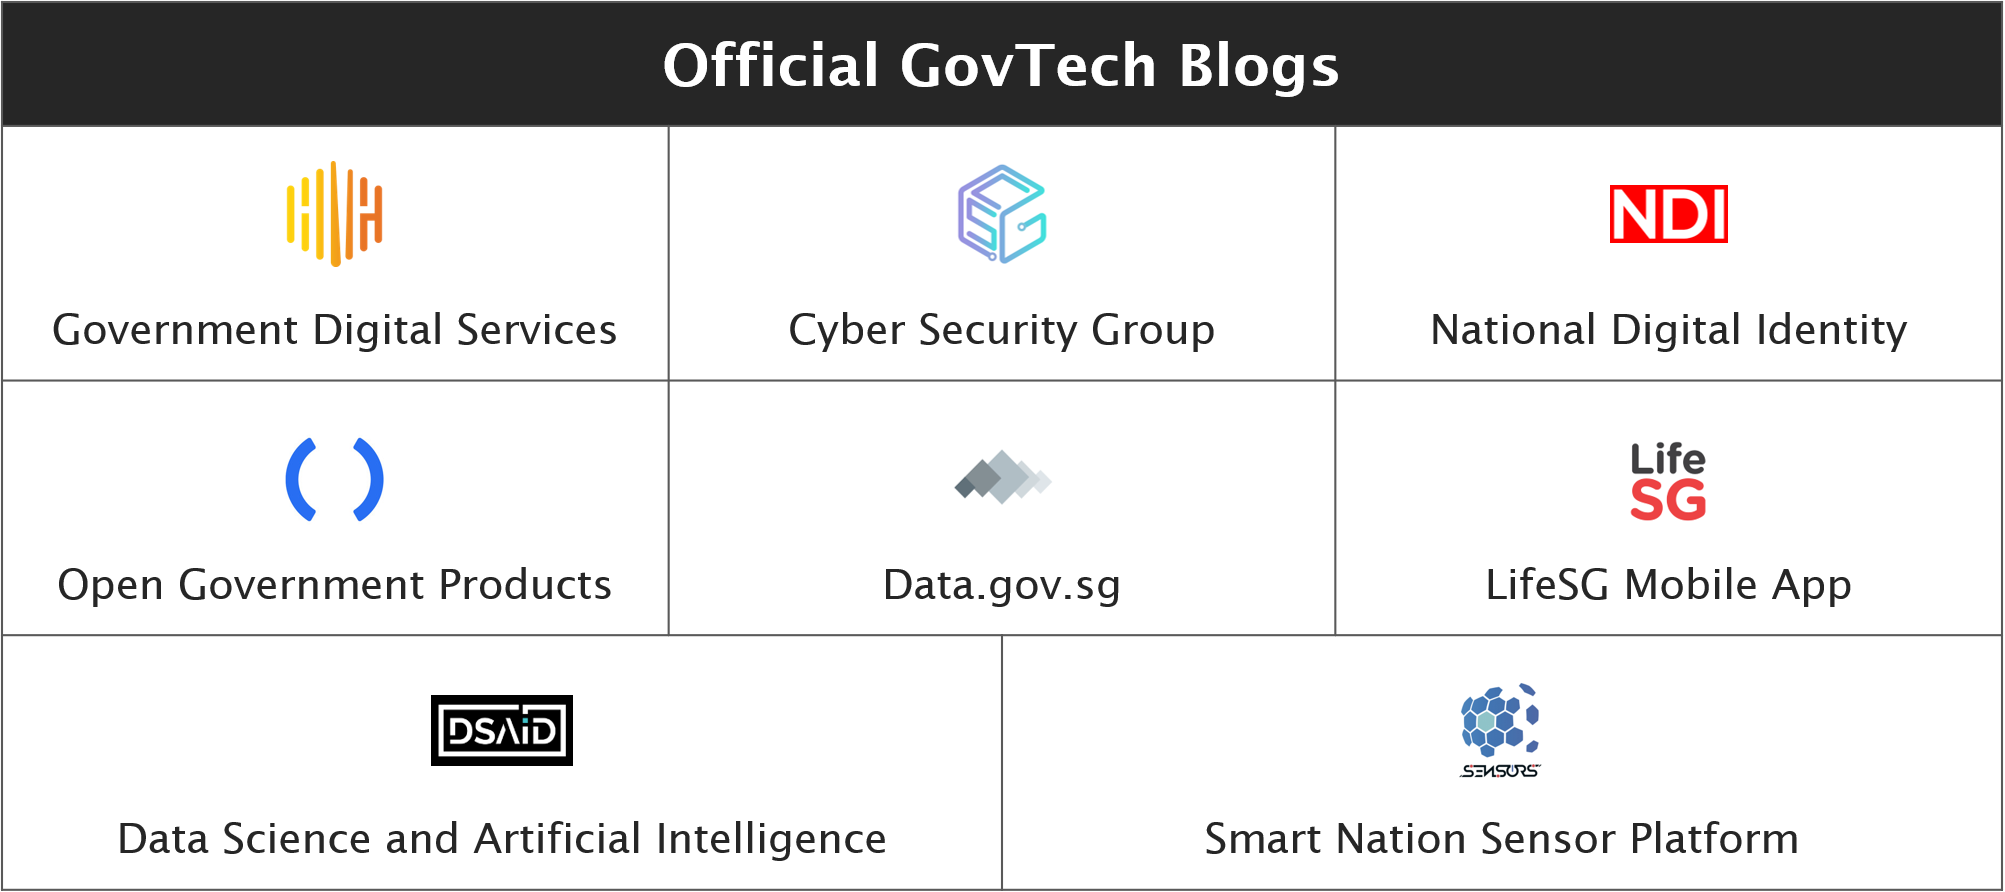 Different Medium blogs under GovTech